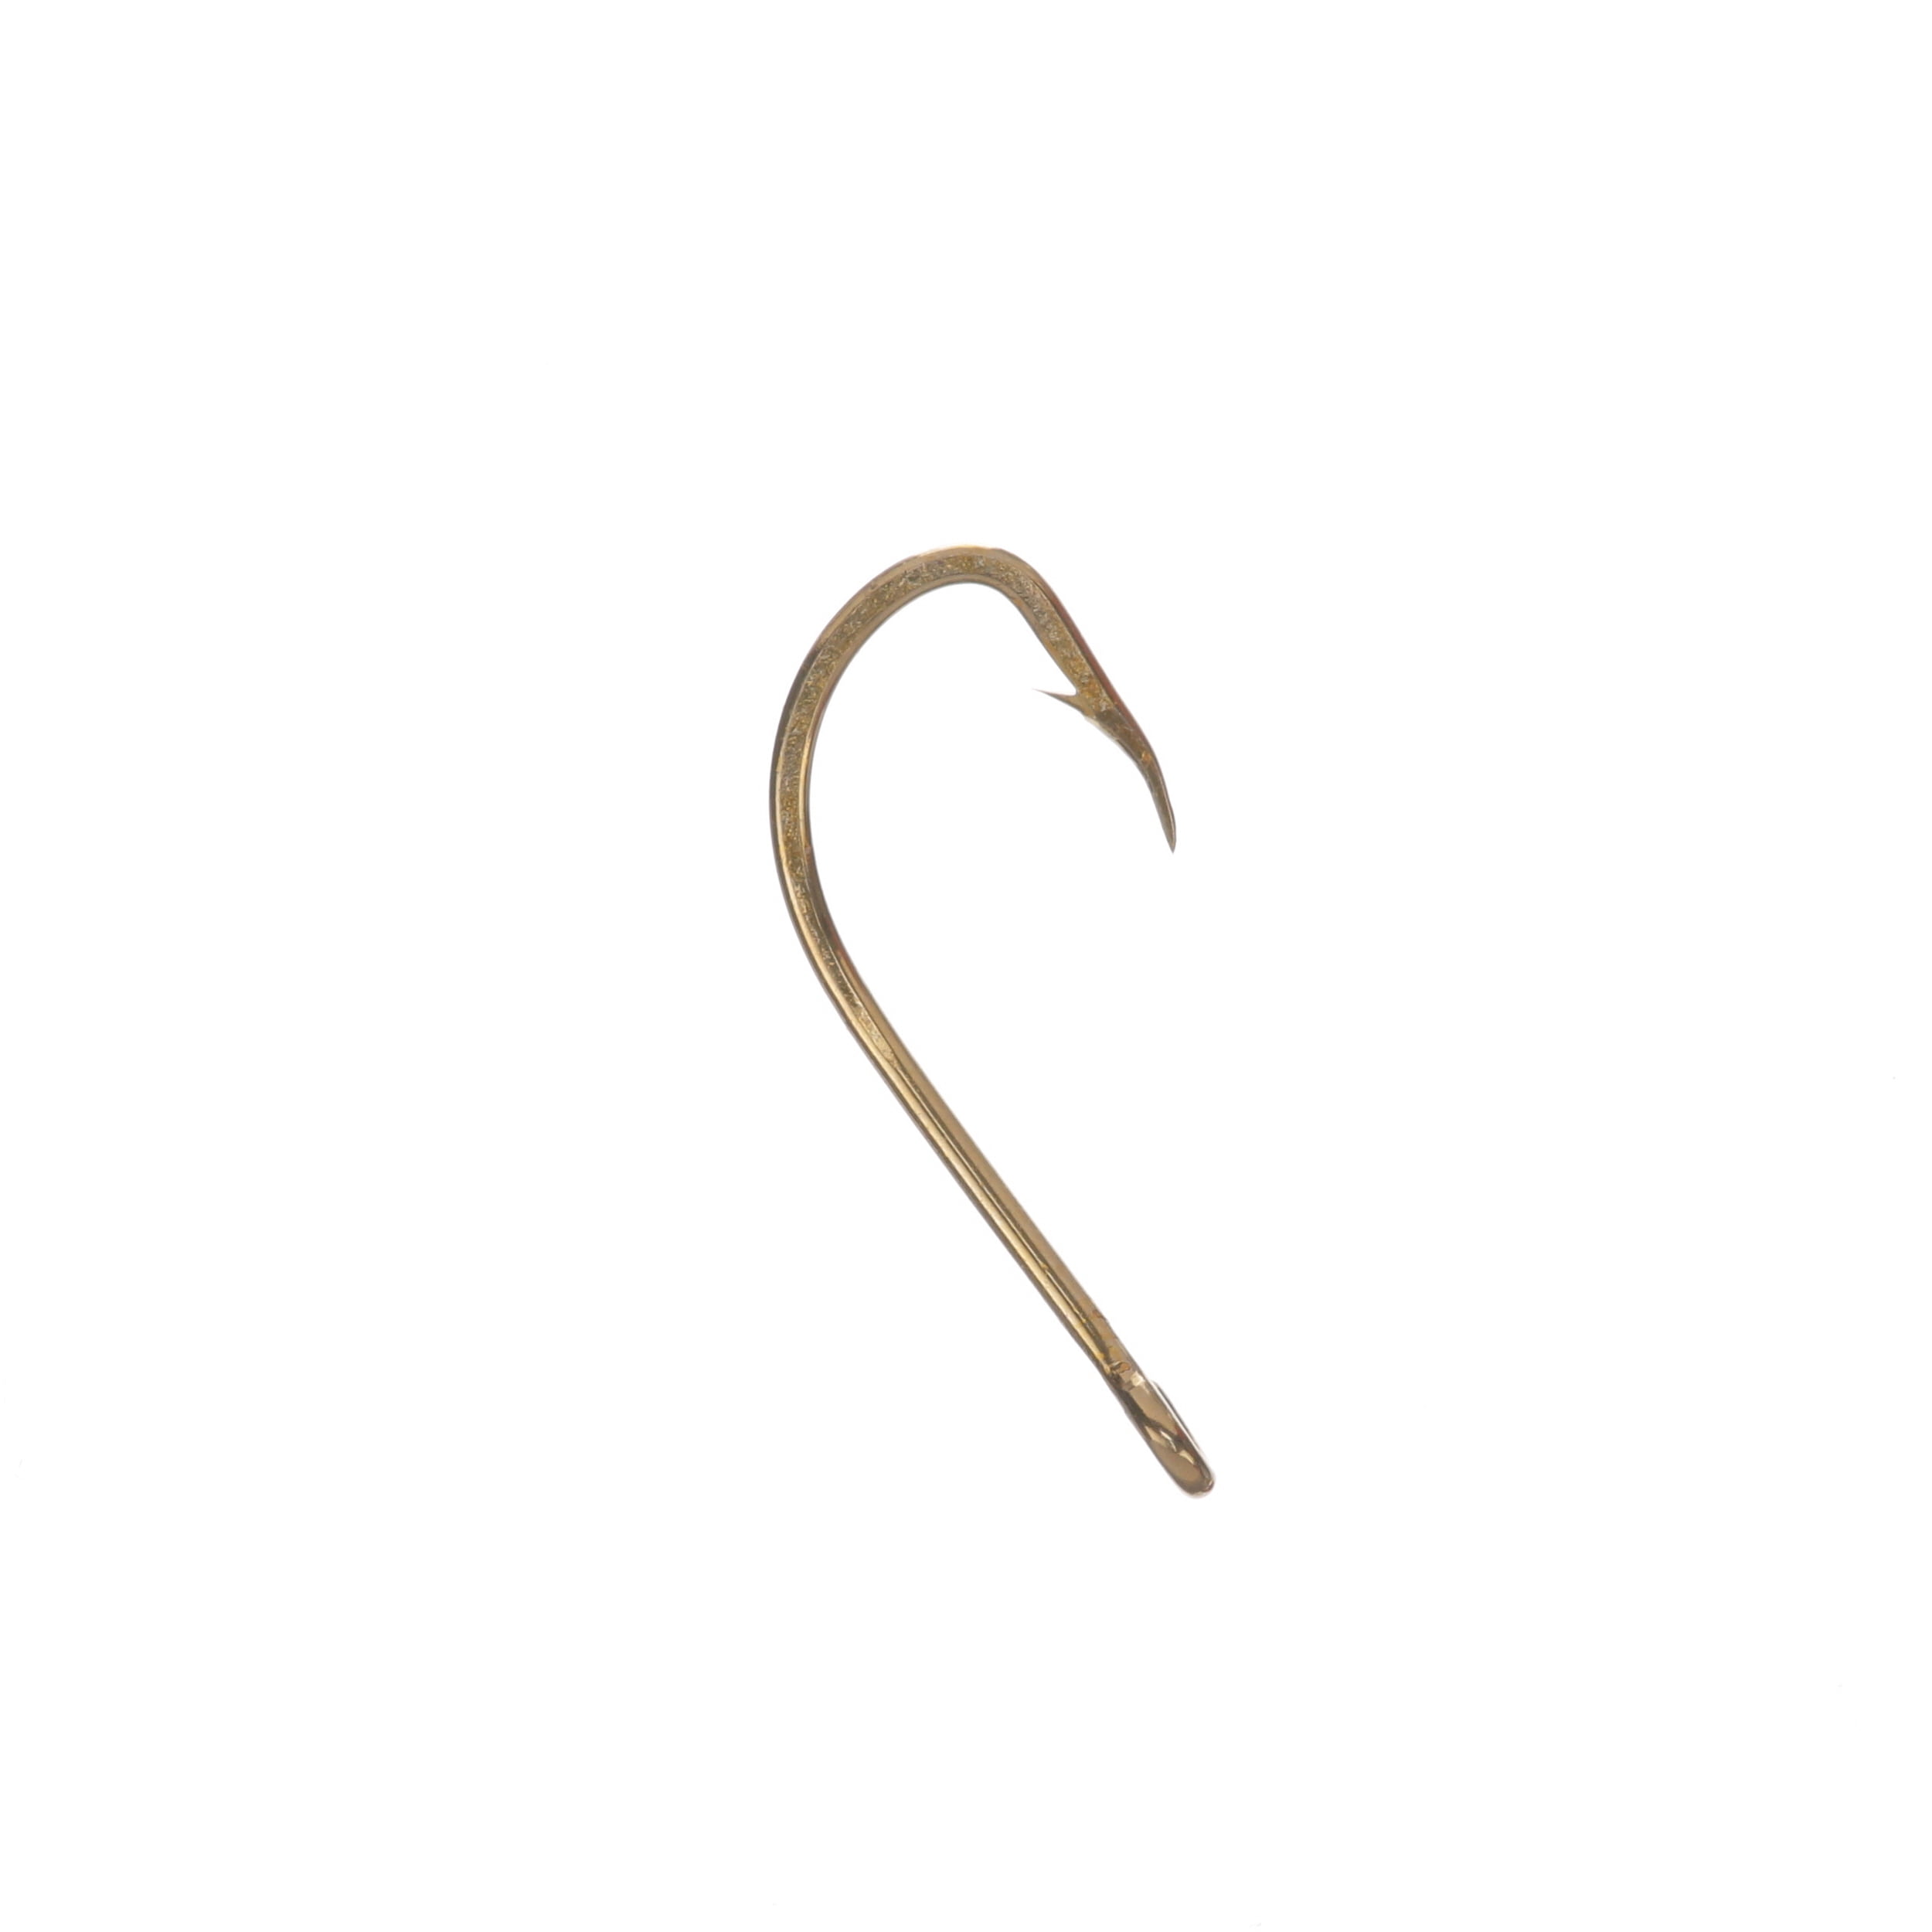 Mustad Baitholder Hook (Bronze) - Size: #2 50pc 